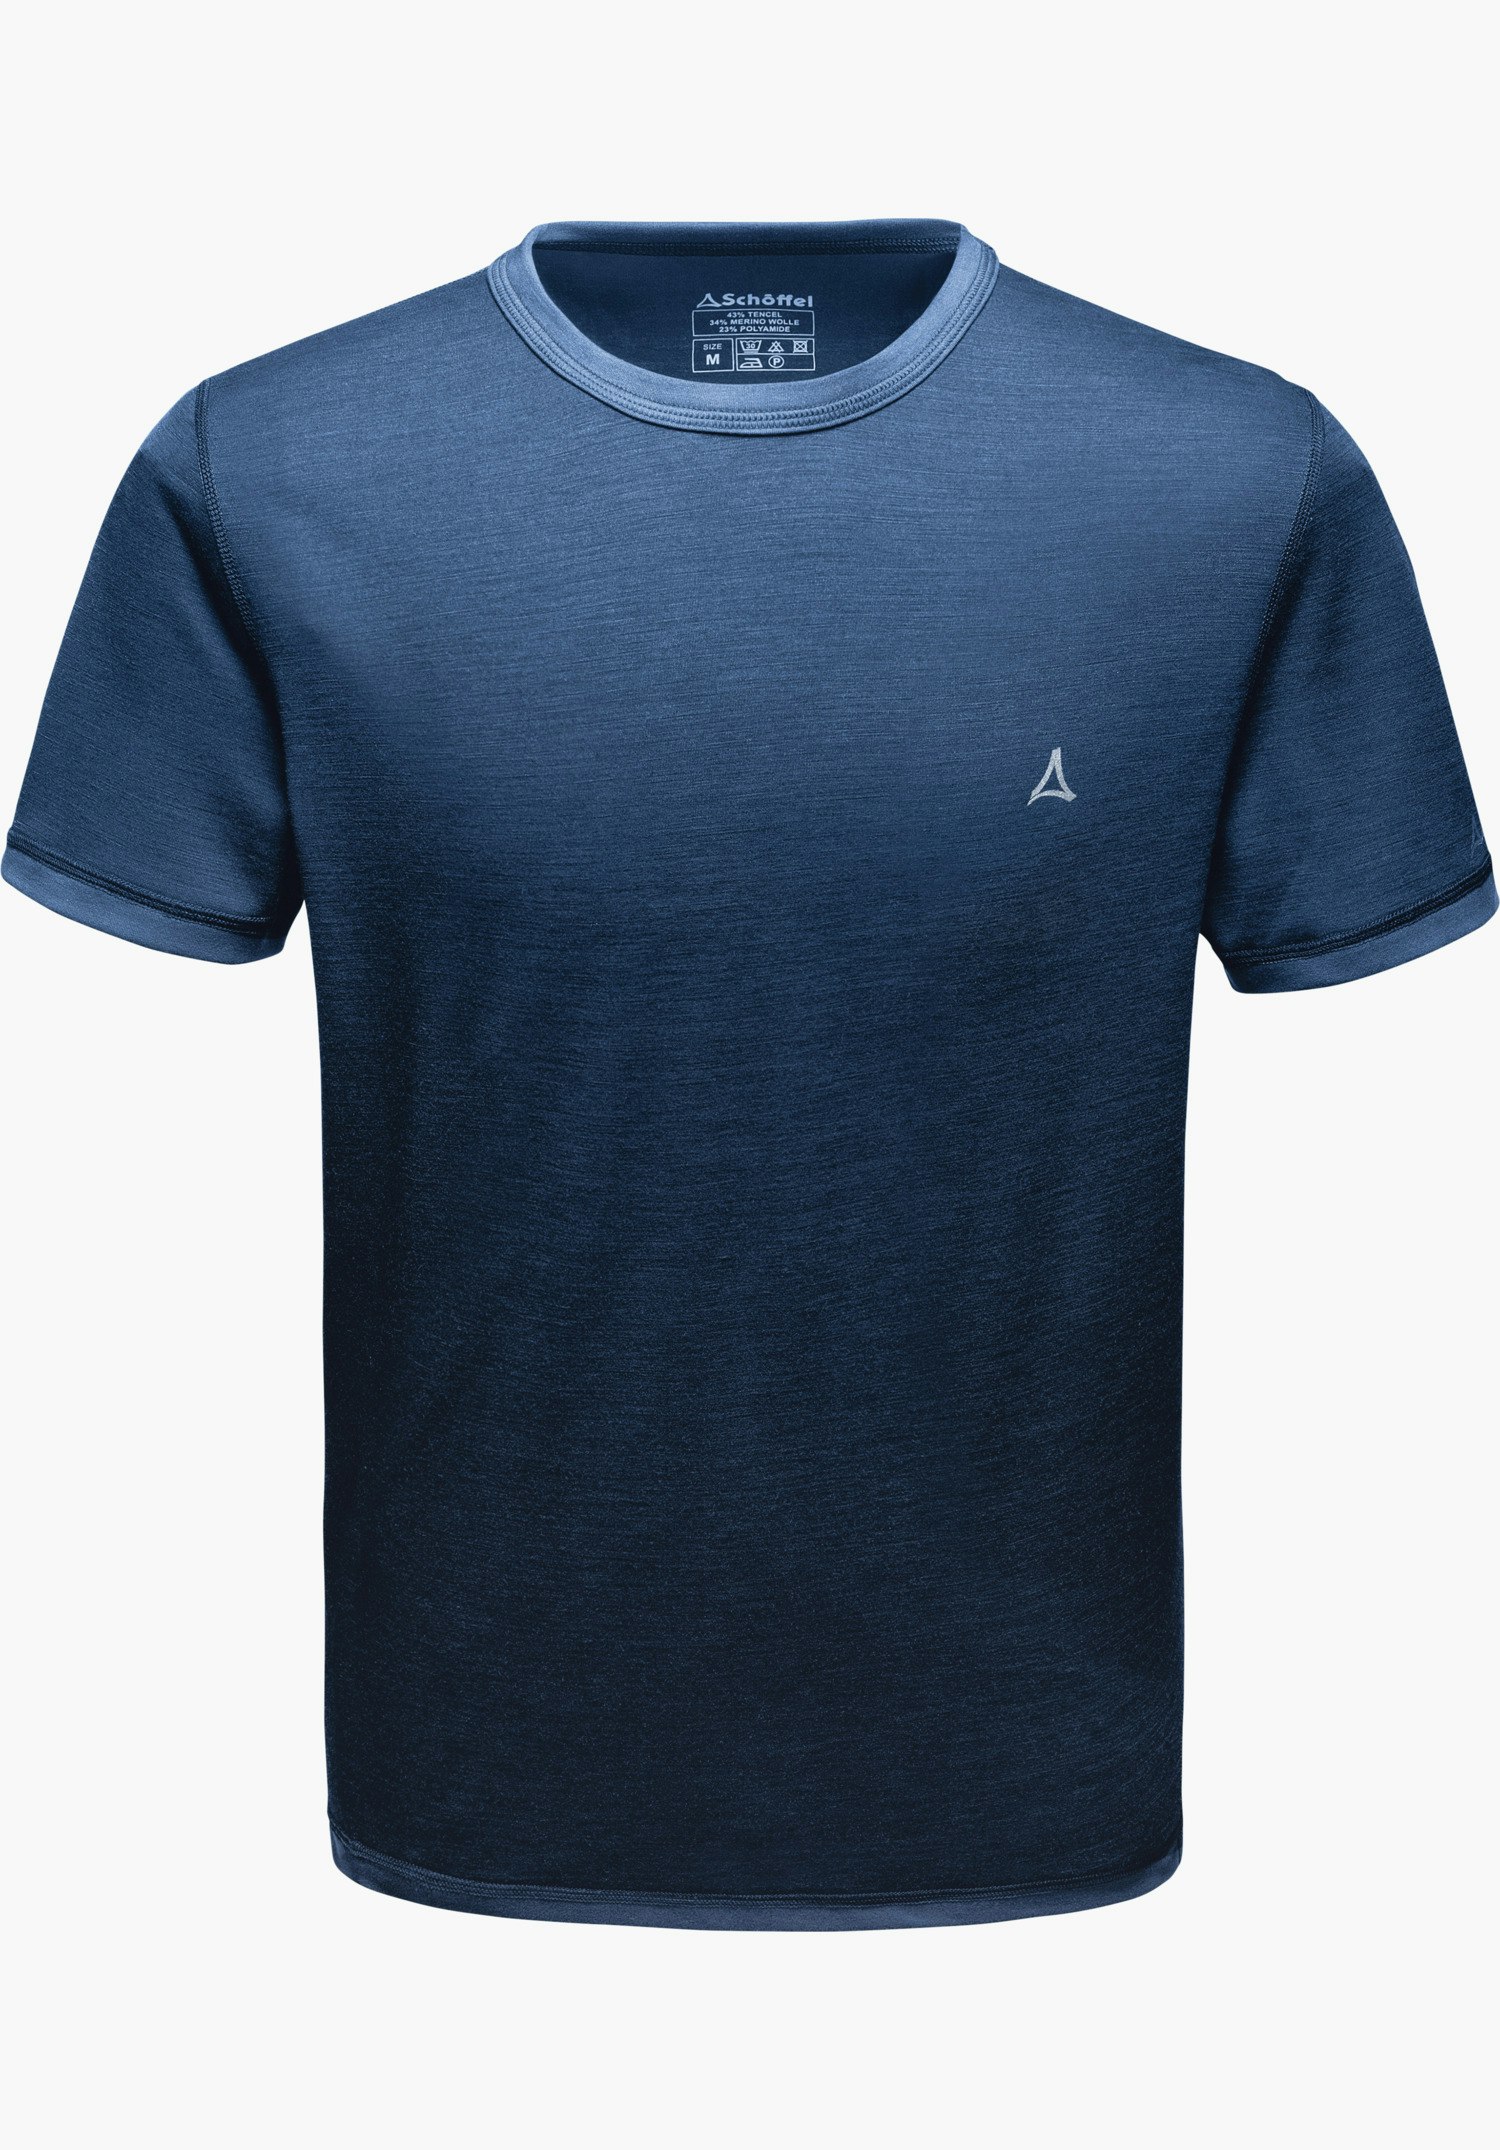 Schöffel Merino Sport Shirt 1/2 Arm M Funktionsunterwäsche Herren blau Outdoor 